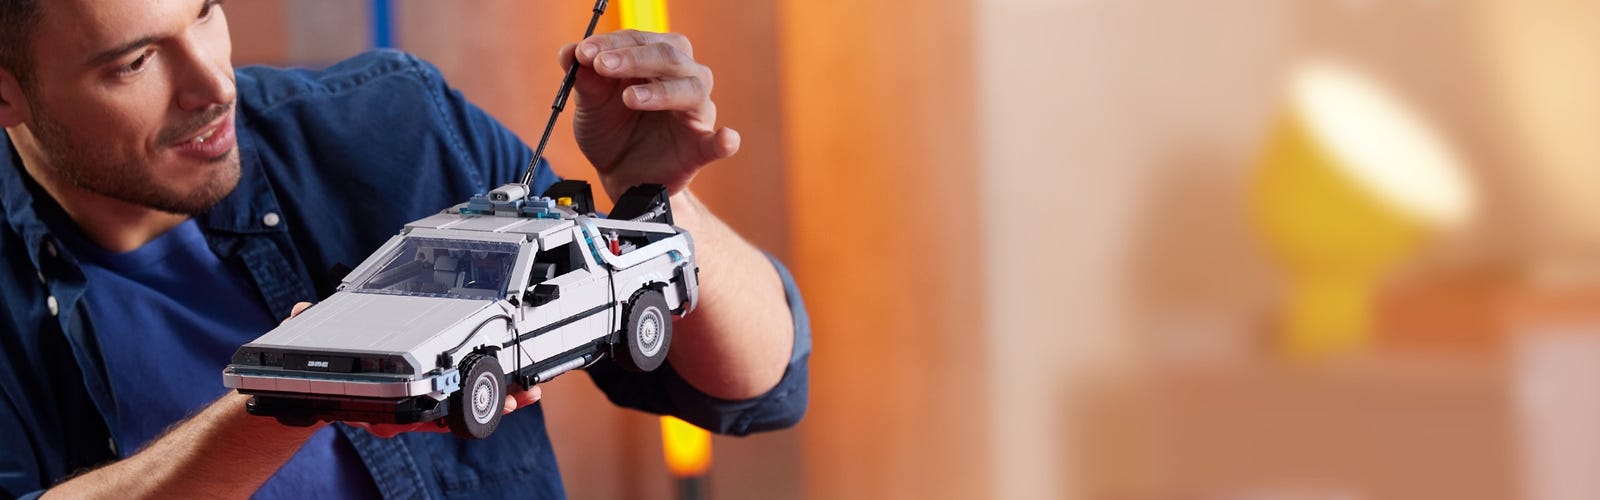 Comment le LEGO BttF DeLorean original a influencé le nouveau